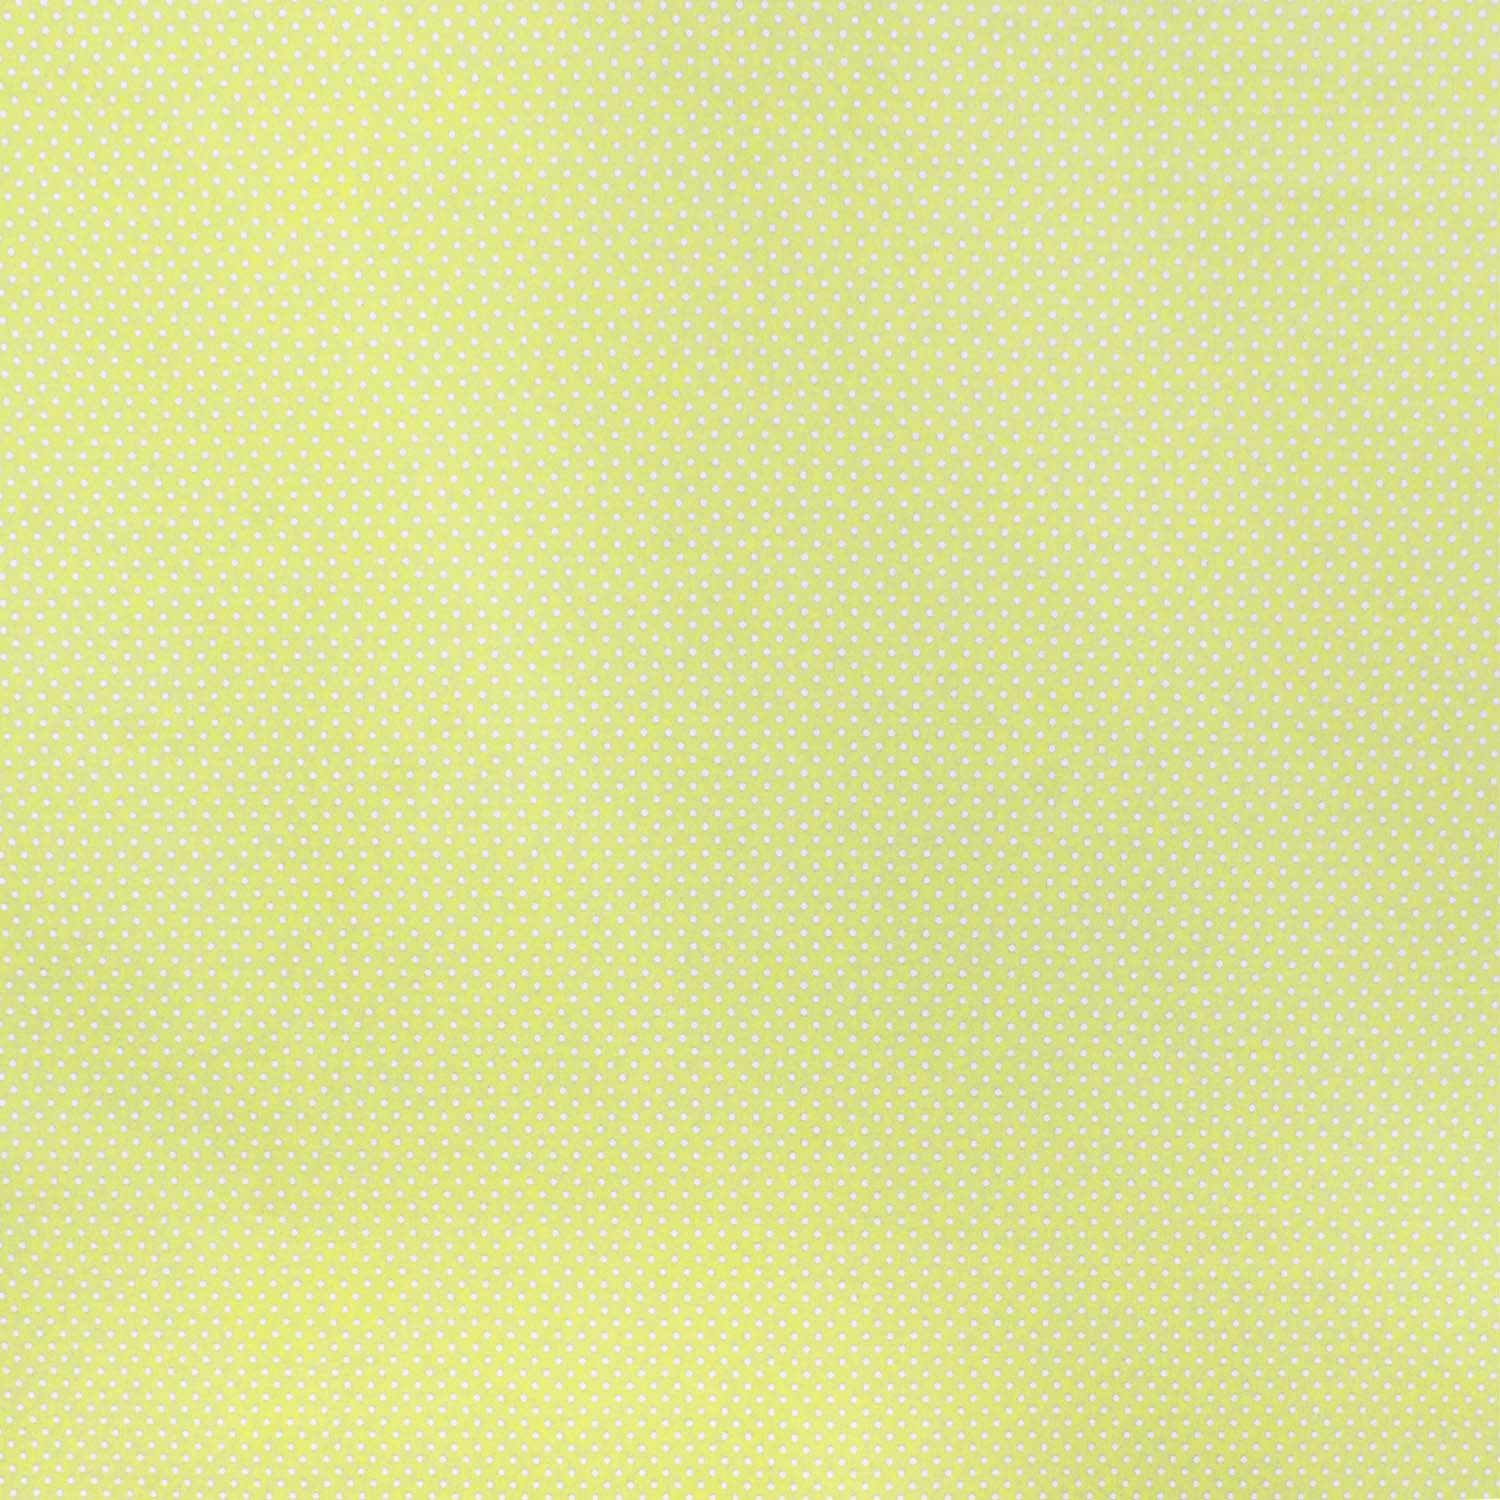 tecido-tricoline-poa-mini-branco-fundo-amarelo-candy-della-aviamentos-10878